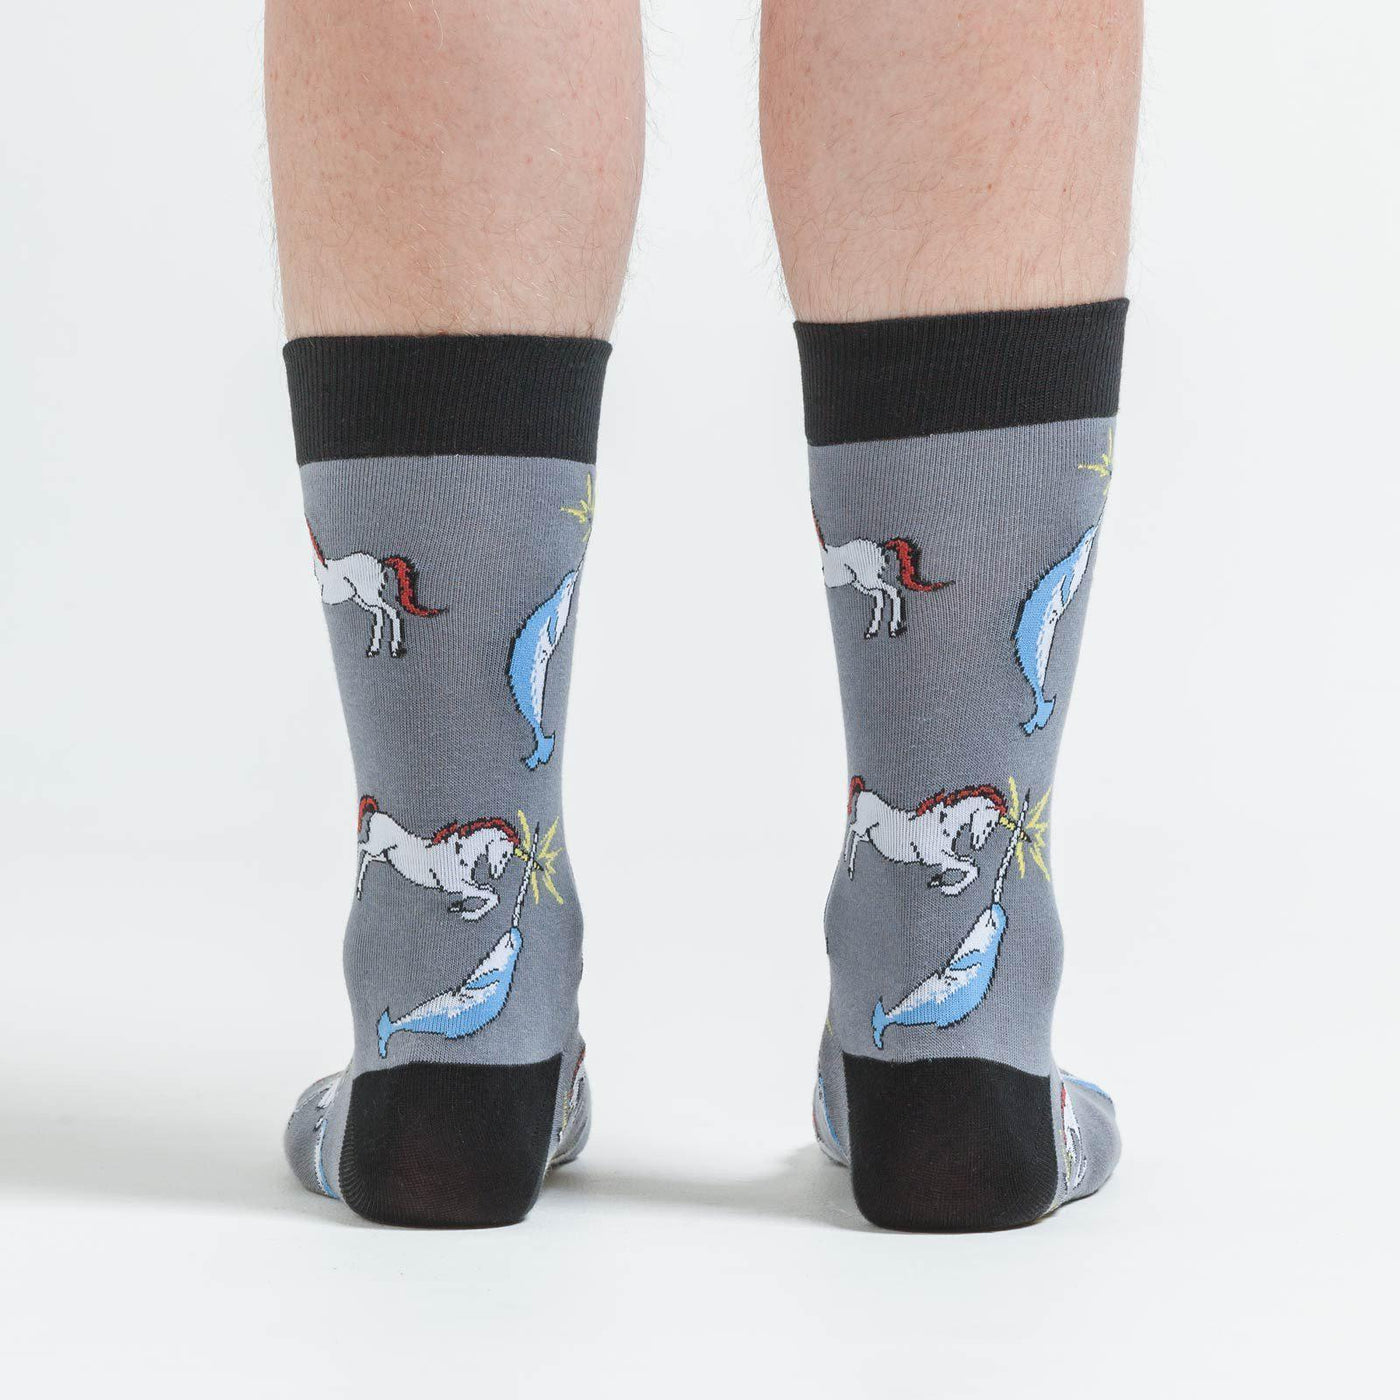 Sock It To Me - Unicorn vs. Narwhal Crew Socks | Men's - Knock Your Socks Off